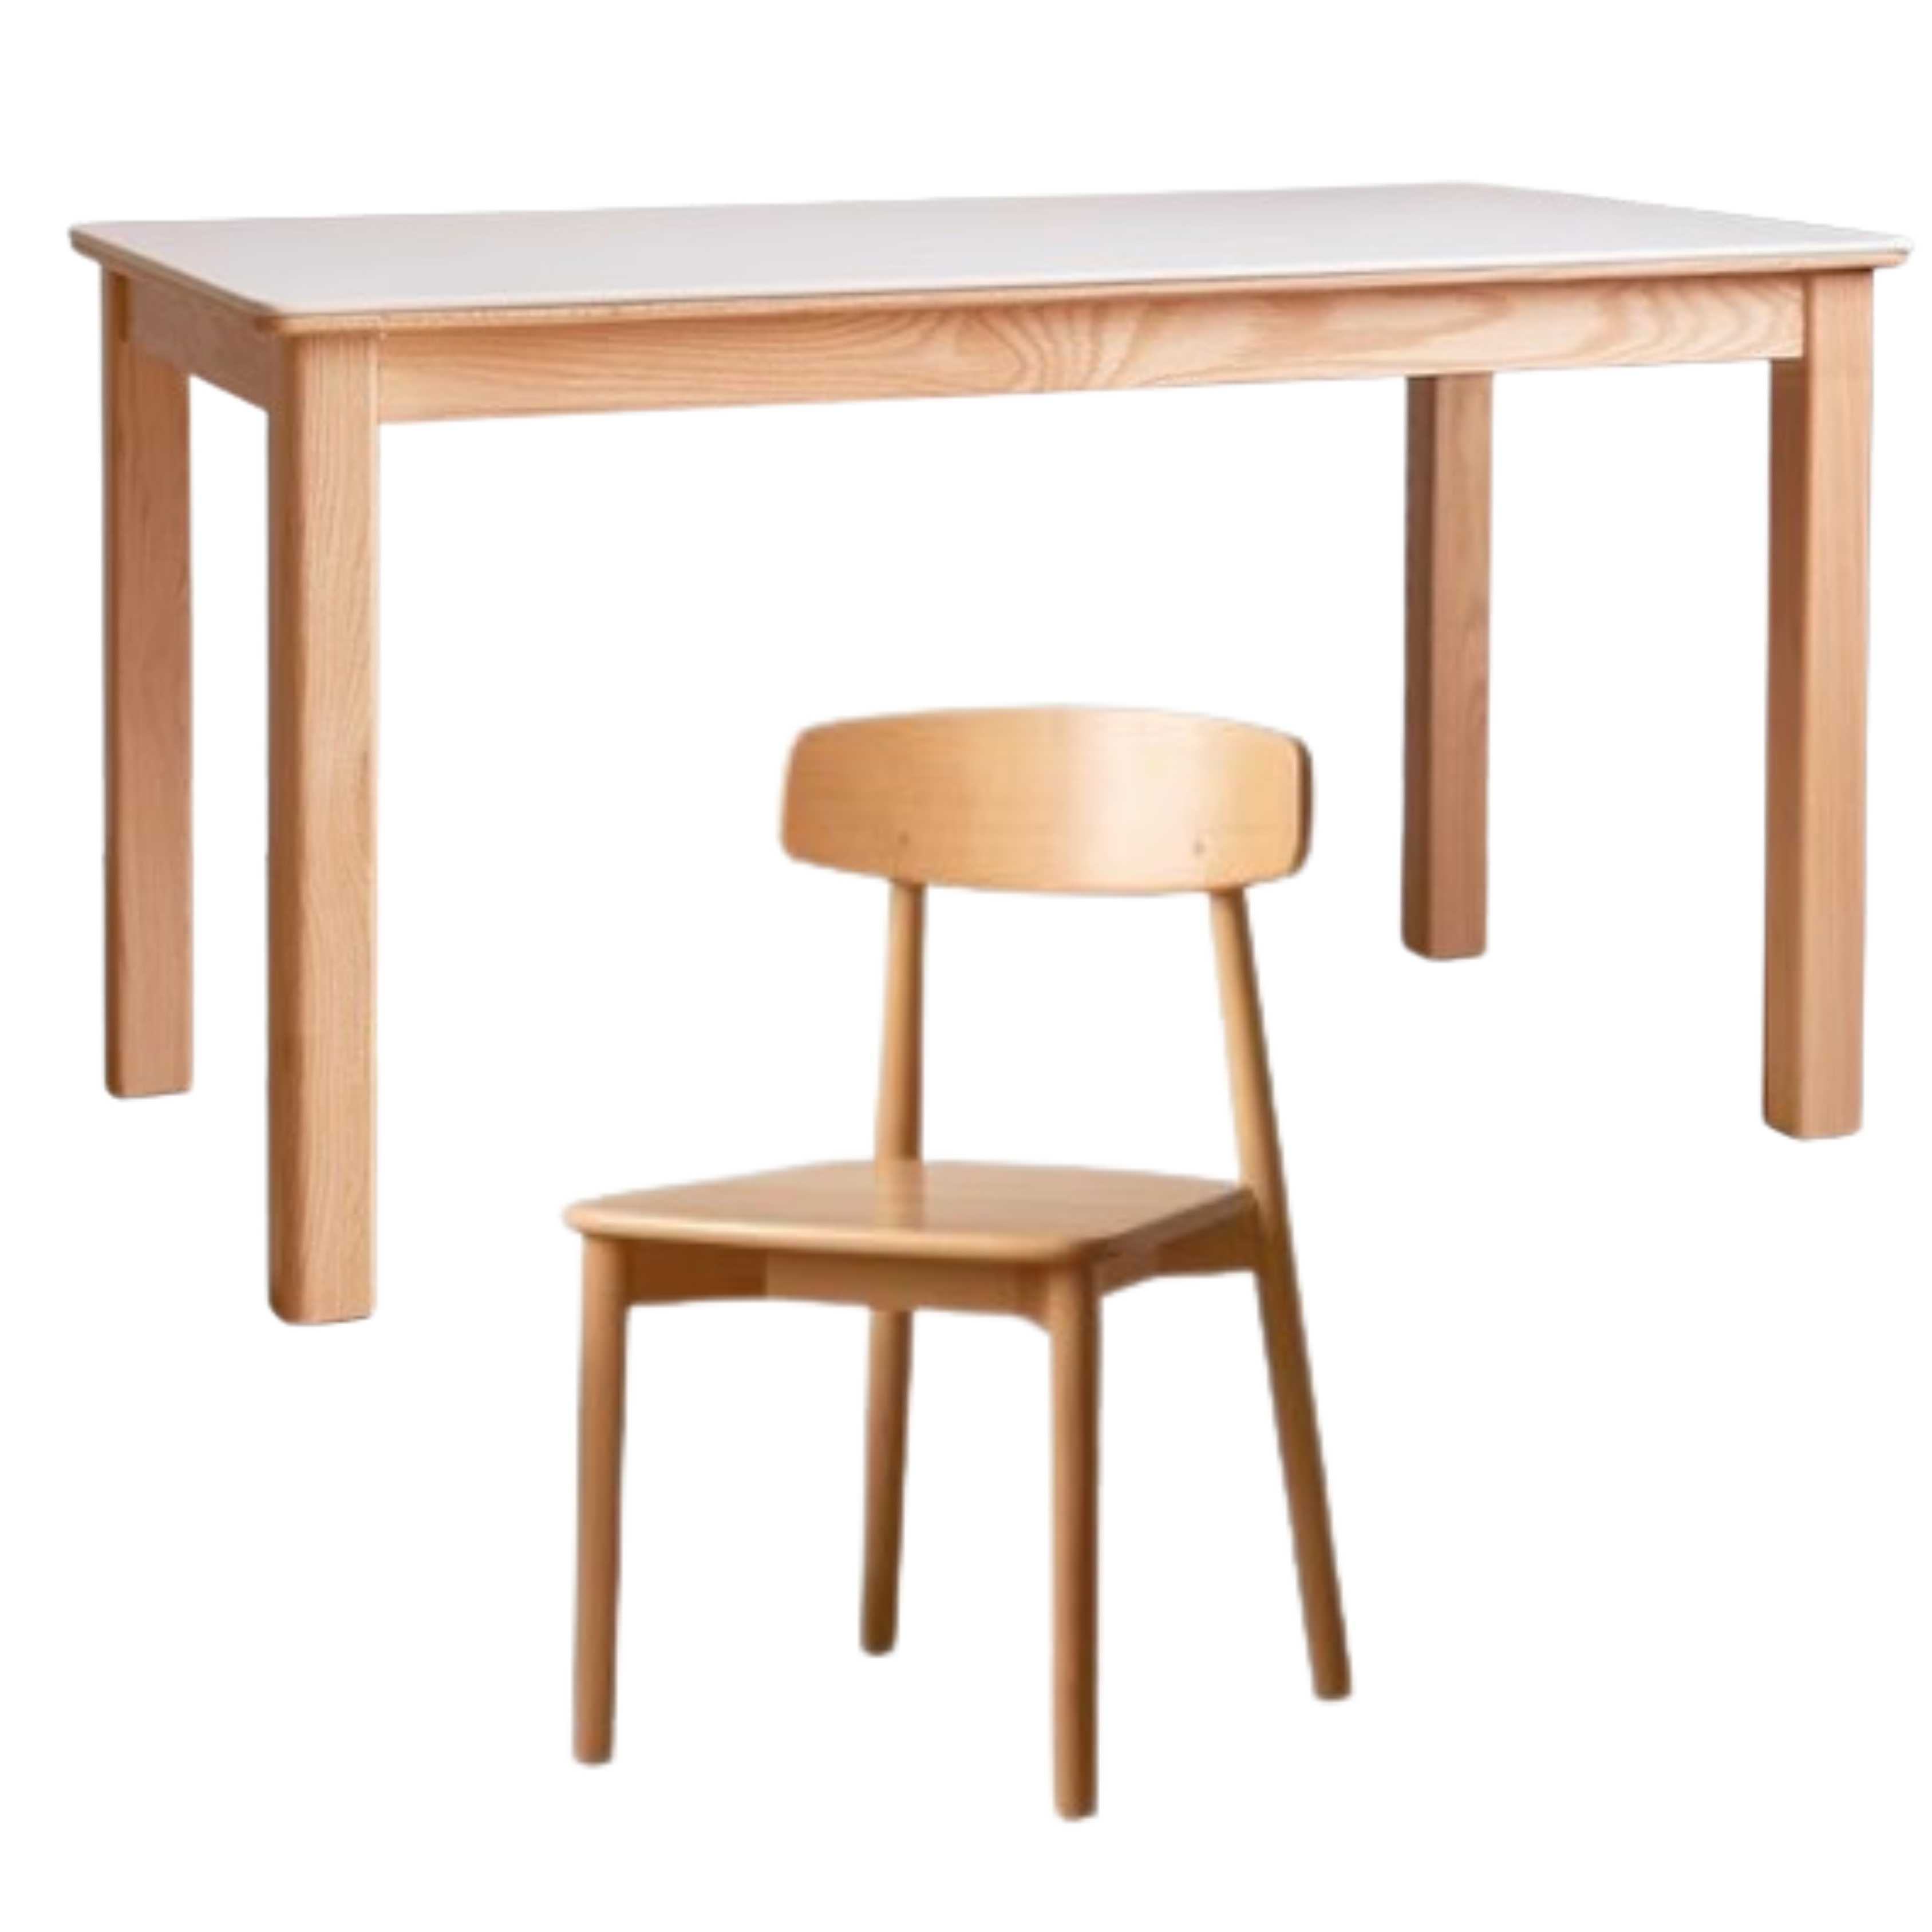 Oak, Beech solid wood slate dining table modern "